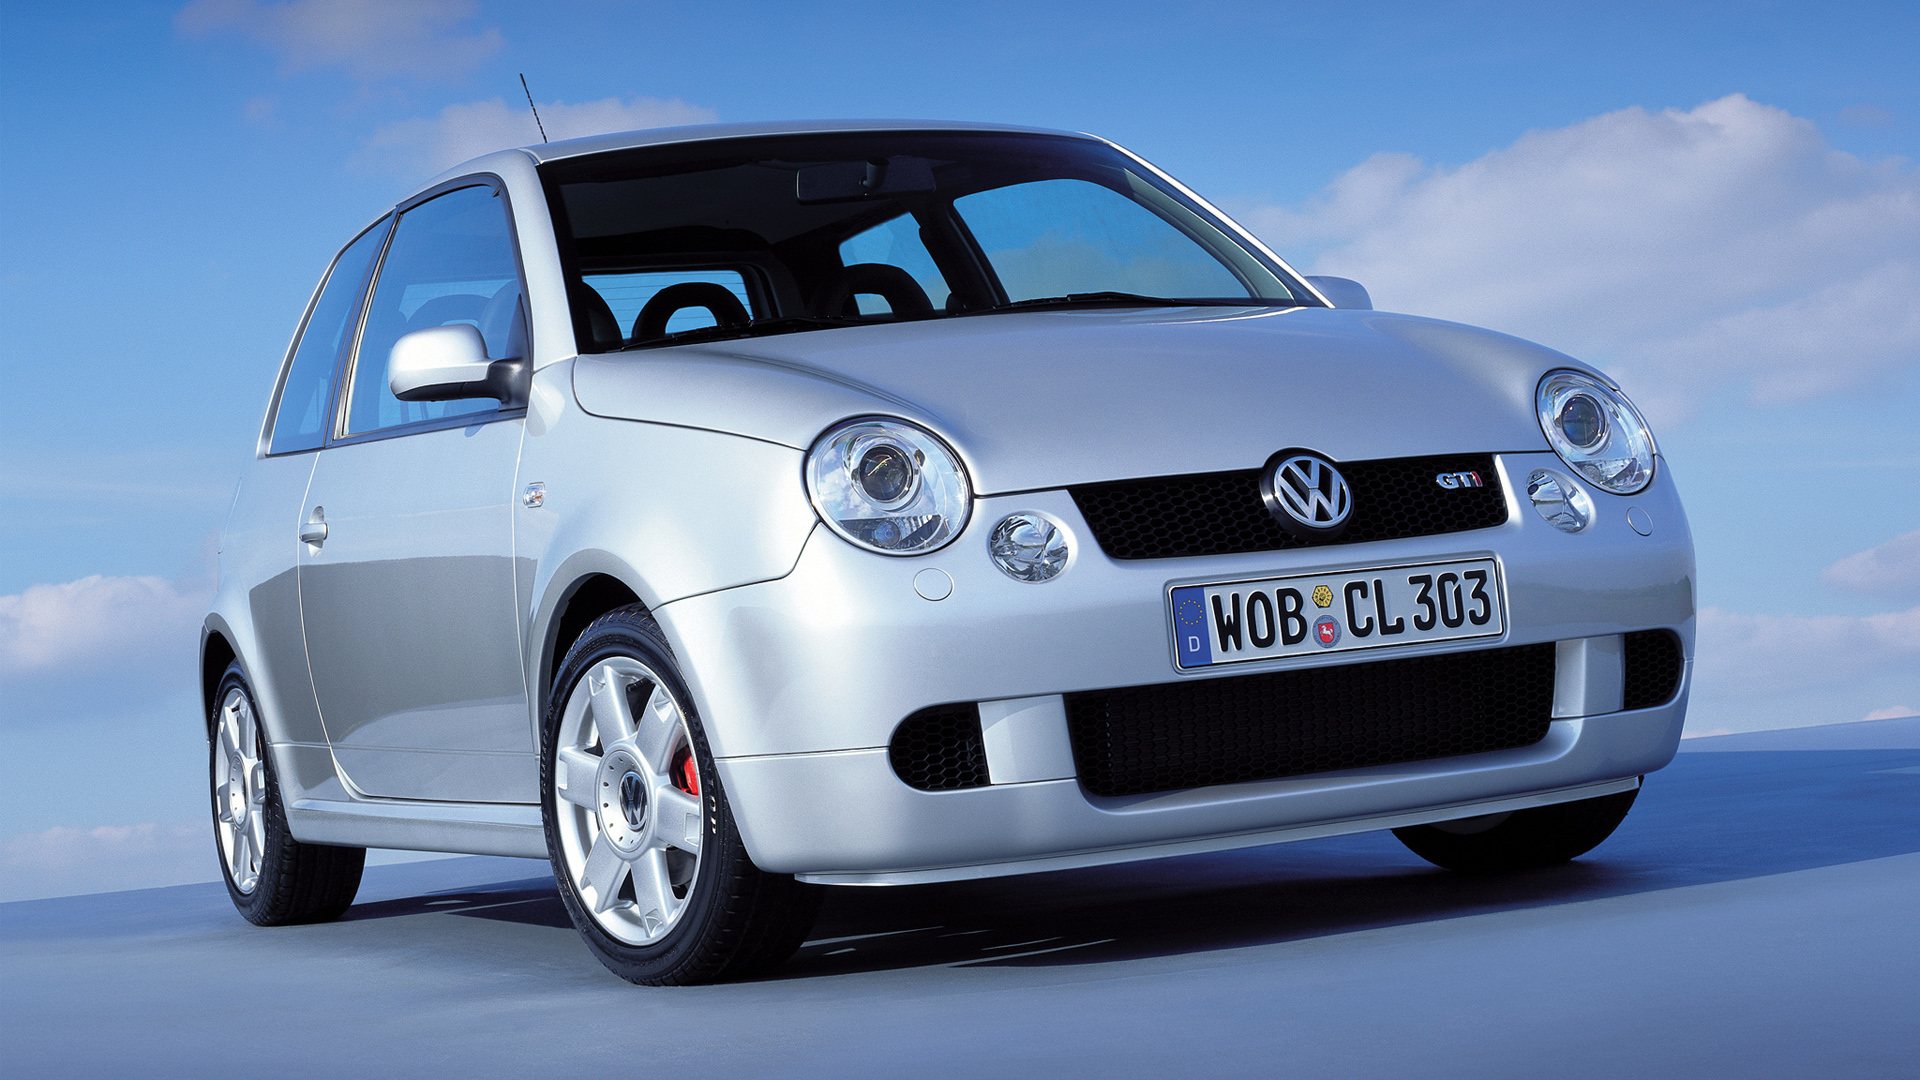 Coche del día: Volkswagen Lupo GTI